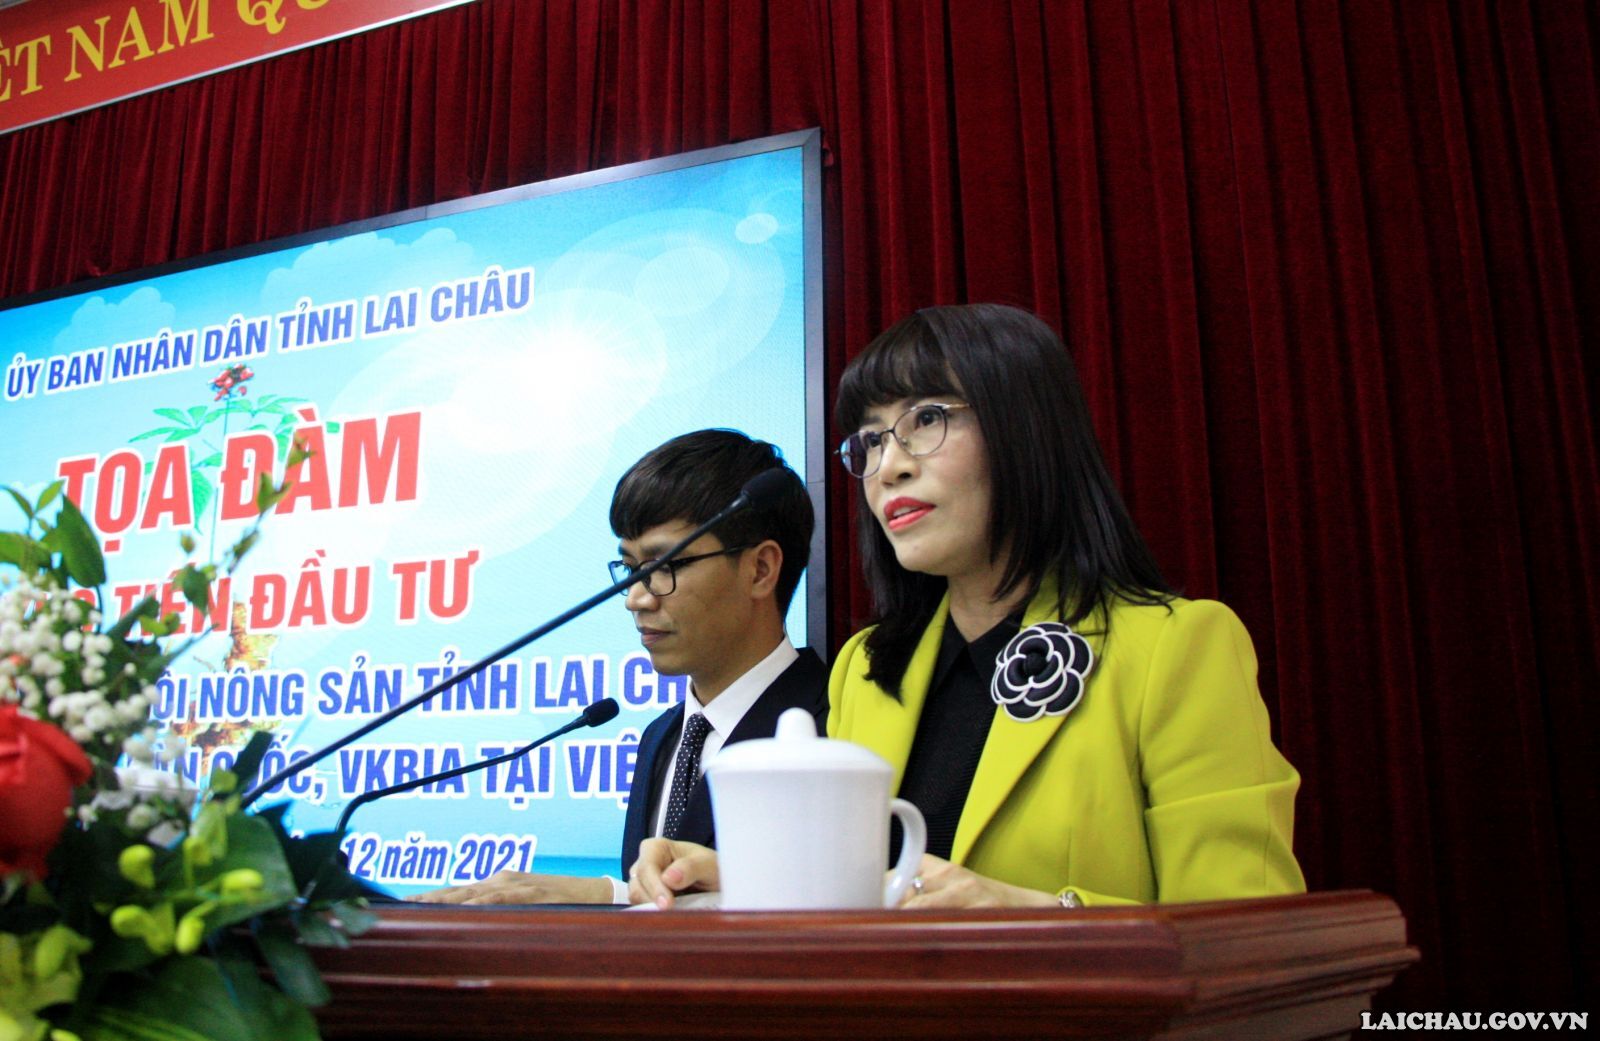 Tọa đàm xúc tiến đầu tư giữa Hiệp hội Sâm, Hội nông sản tỉnh Lai Châu và Hội – Hiệp hội của Hàn Quốc, VKBIA tại Việt Nam - Ảnh minh hoạ 3